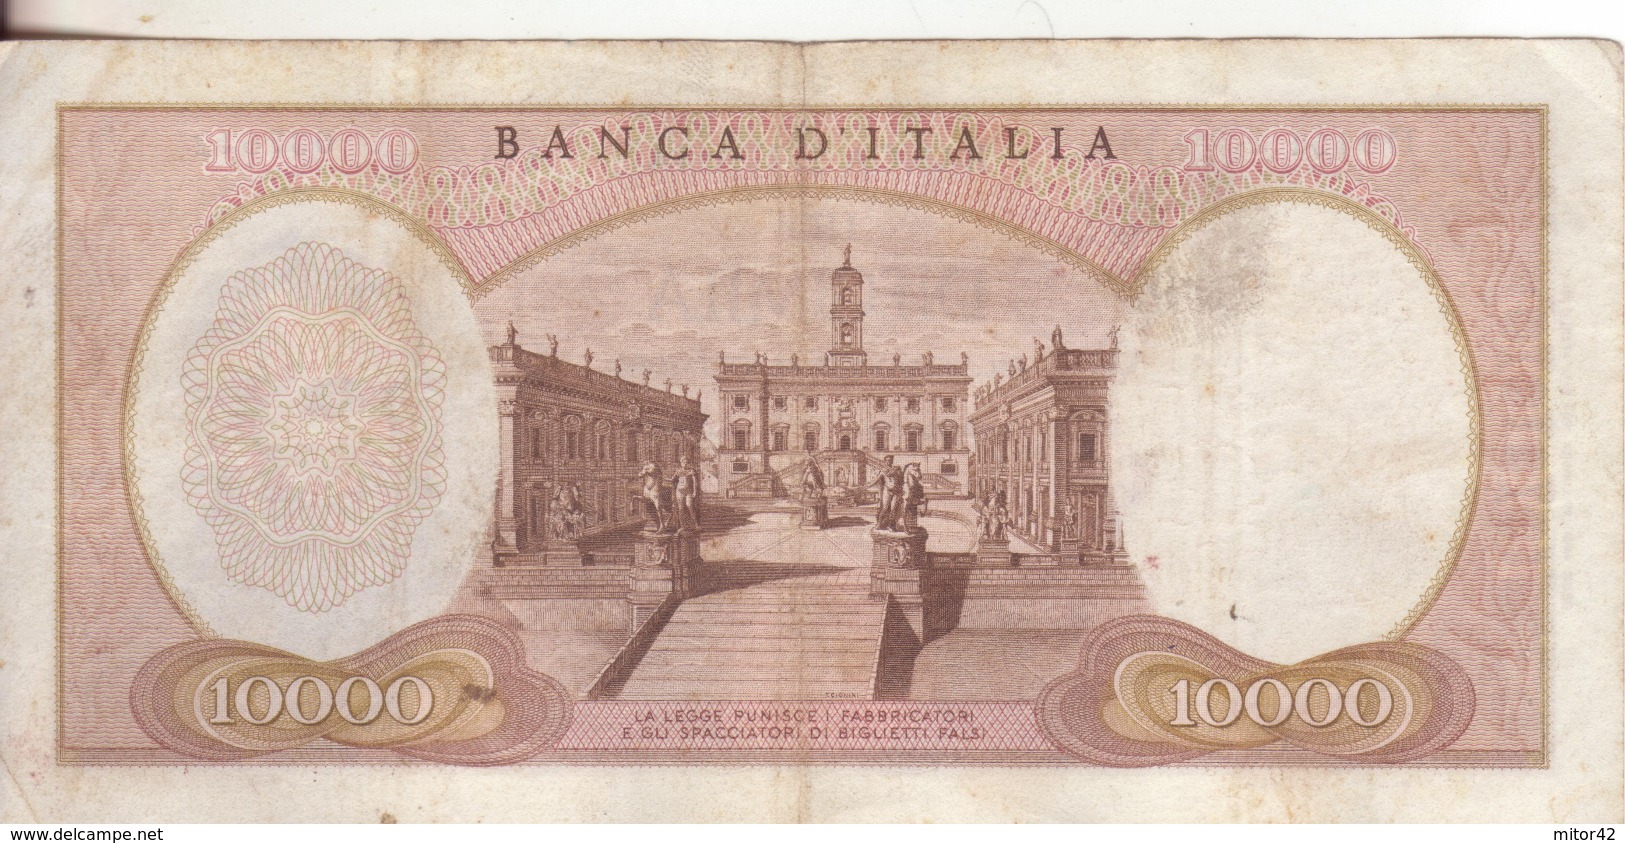 67*-Cartamoneta-Banconota Italia Repubblica Da L10.000 Michelangelo 27.7.64-Catalogata Rara-Condizione:Circolata - 10000 Lire